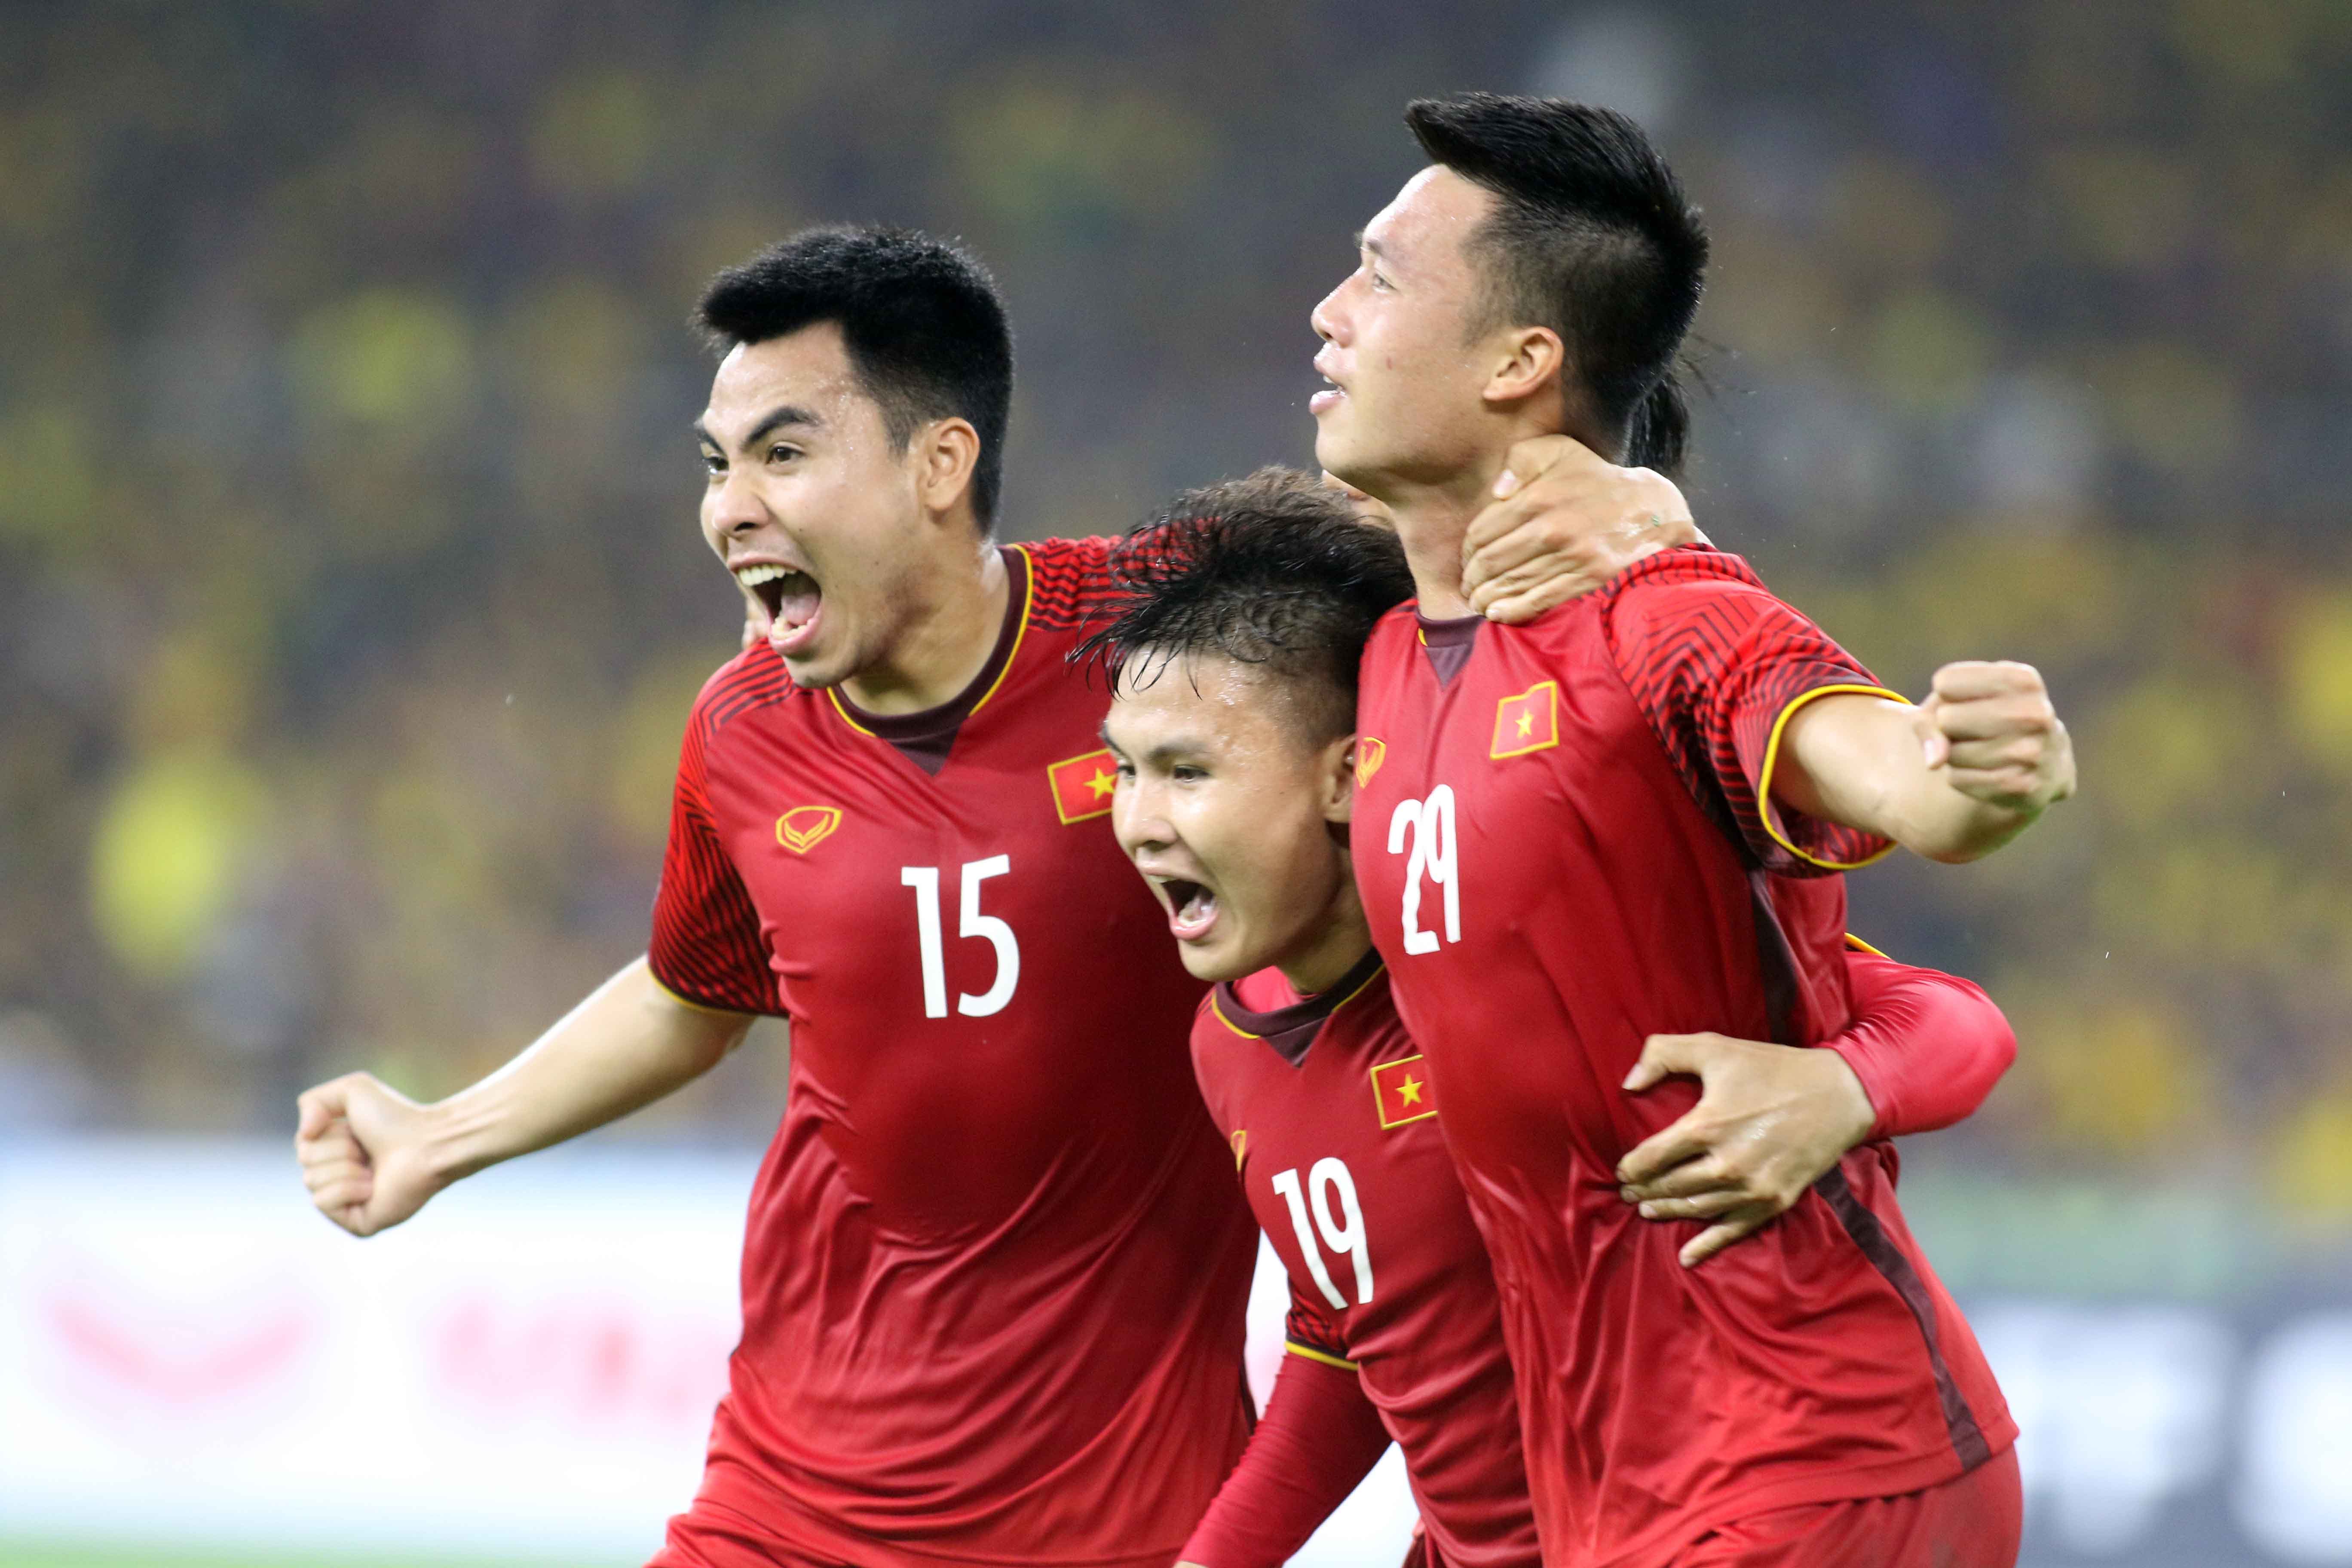 AFF Cup: Cùng xem lại những khoảnh khắc huy hoàng của bóng đá Đông Nam Á tại giải AFF Cup nhé! Những trận đấu căng thẳng, đầy kịch tính chắc chắn sẽ khiến bạn phấn khích và không thể rời mắt khỏi những tài năng trên sân cỏ.